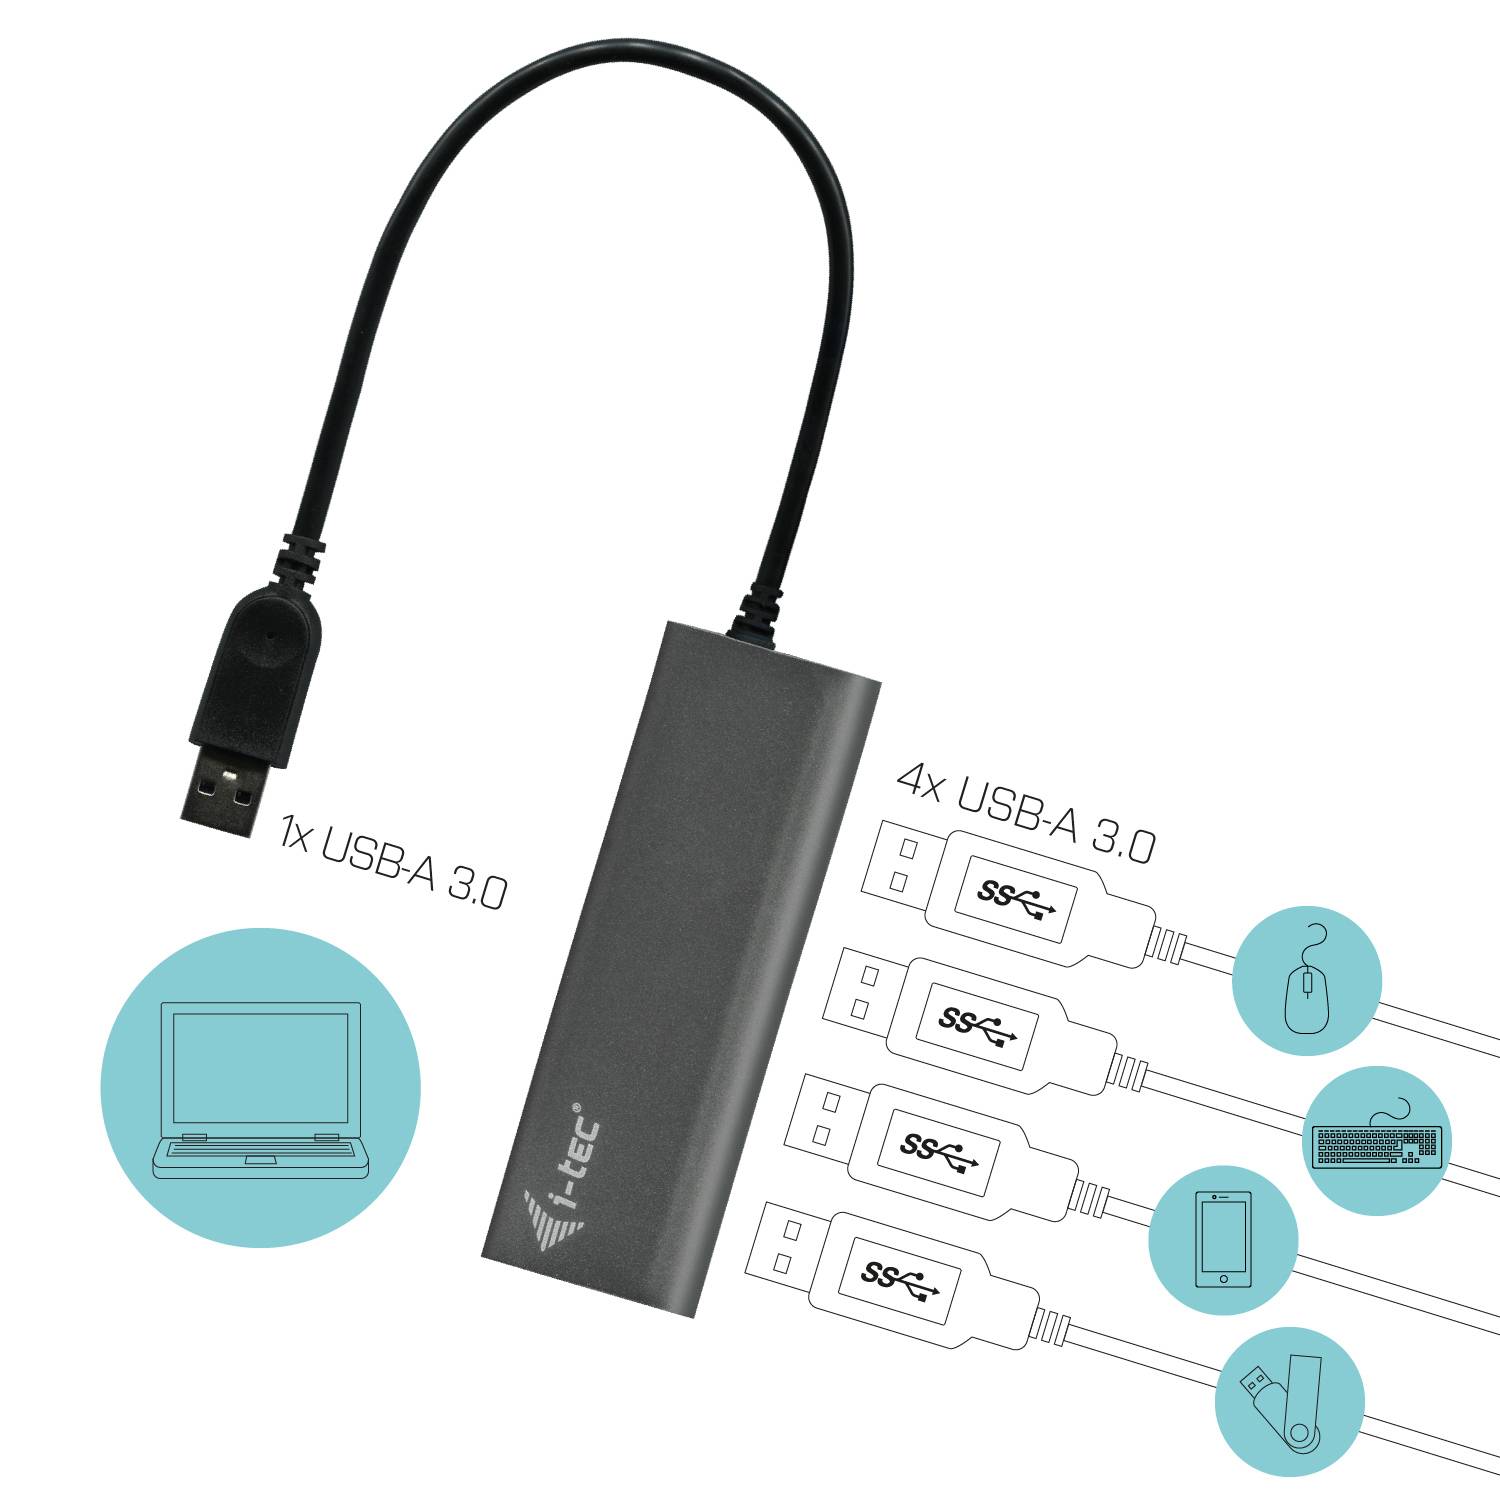 Rca Informatique - image du produit : I-TEC METAL CHARGING HUB 4 PORT USB 3.0 EXT PS 4XUSB CHARGING